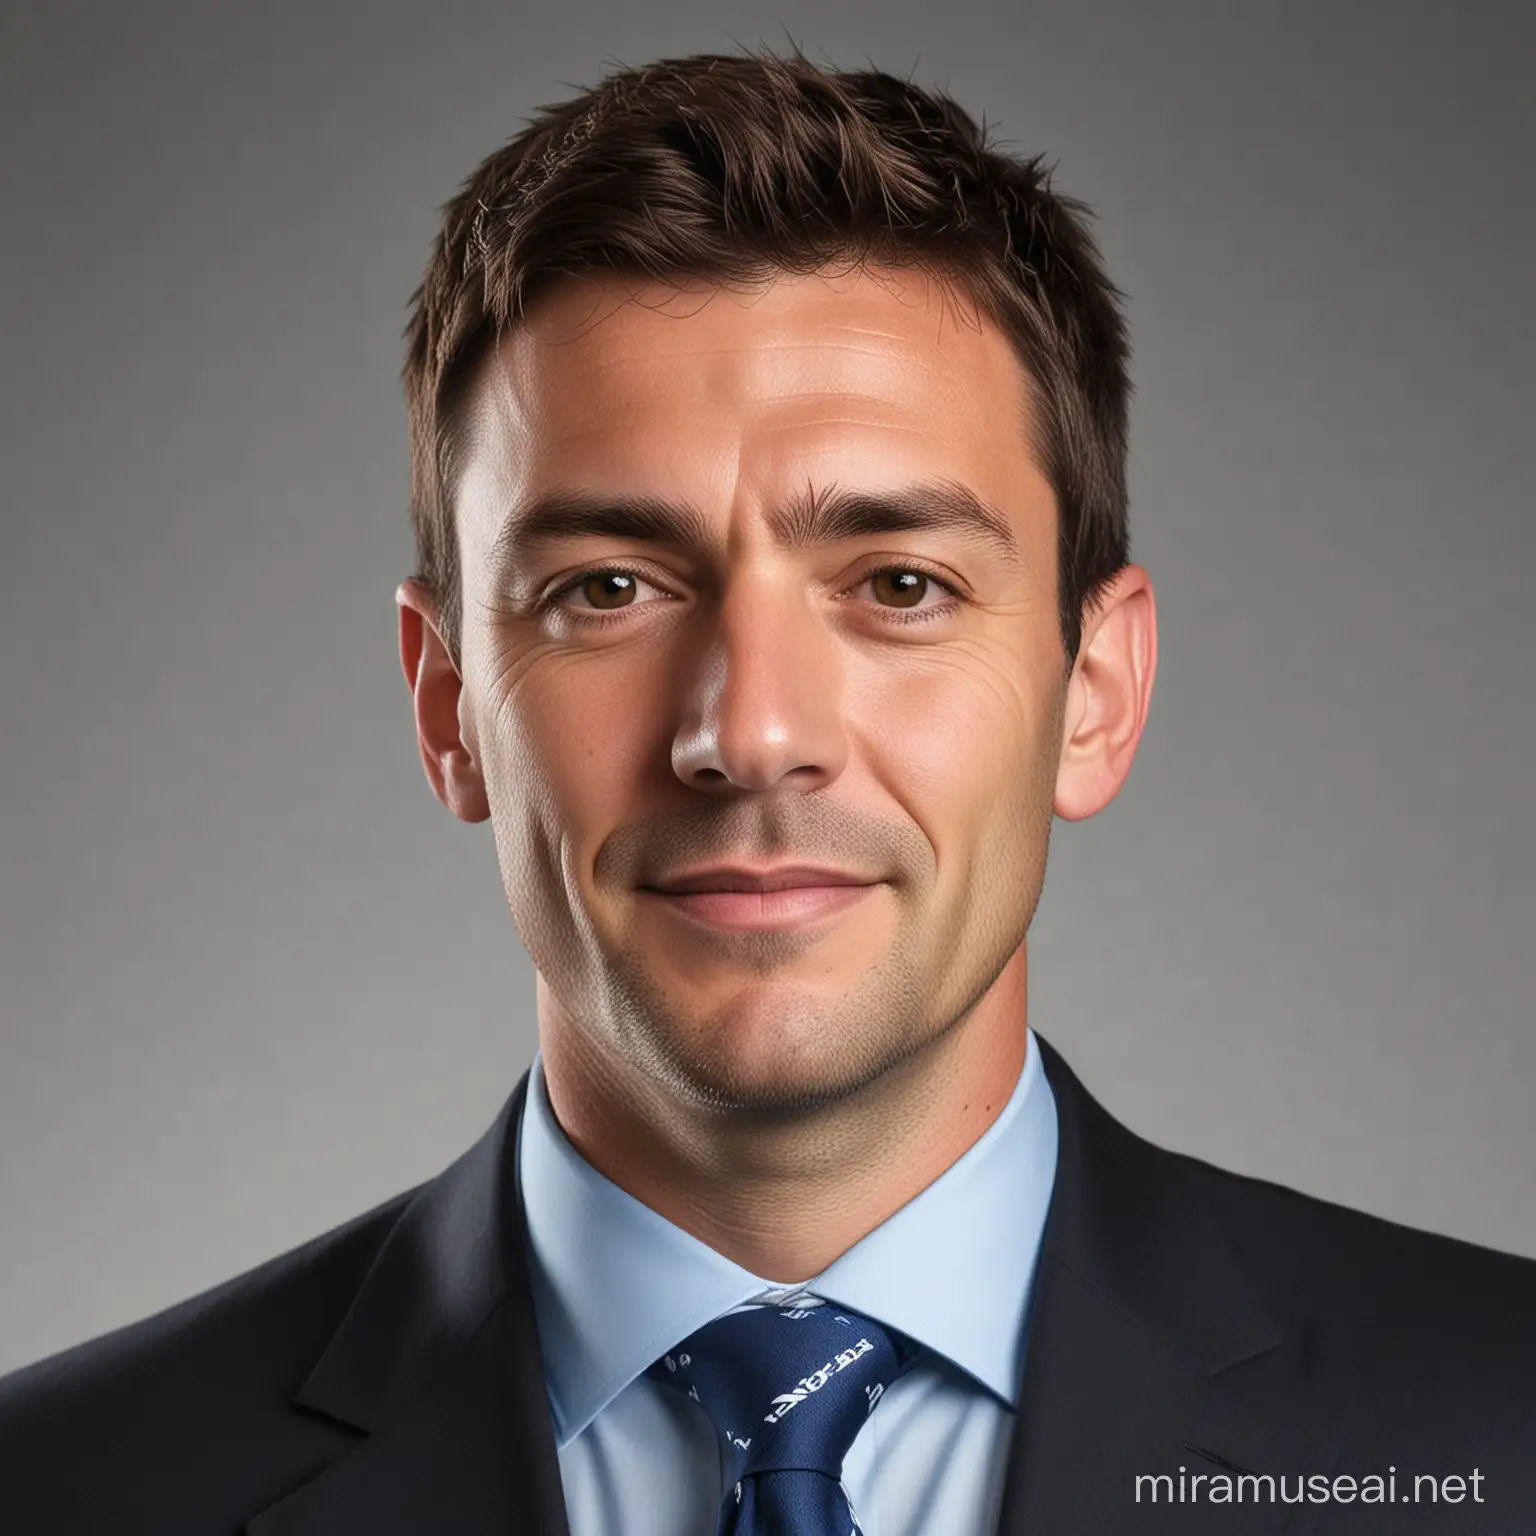 Square LinkedIn Company Profile Picture Premier League Club Board Member